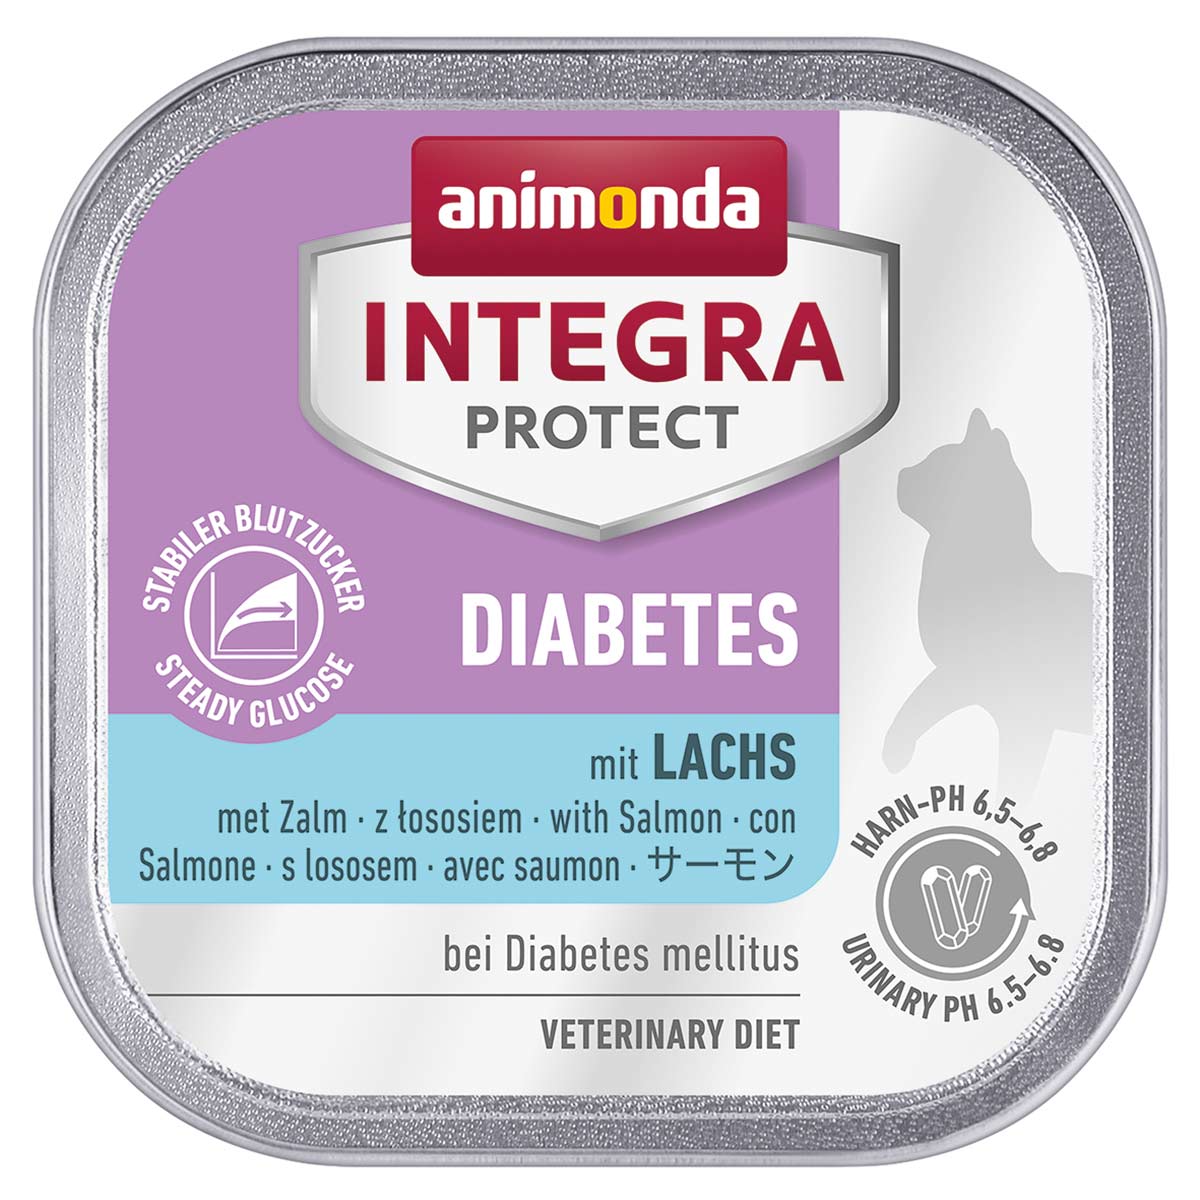 animonda INTEGRA PROTECT Diabetes mit Lachs 32x100g